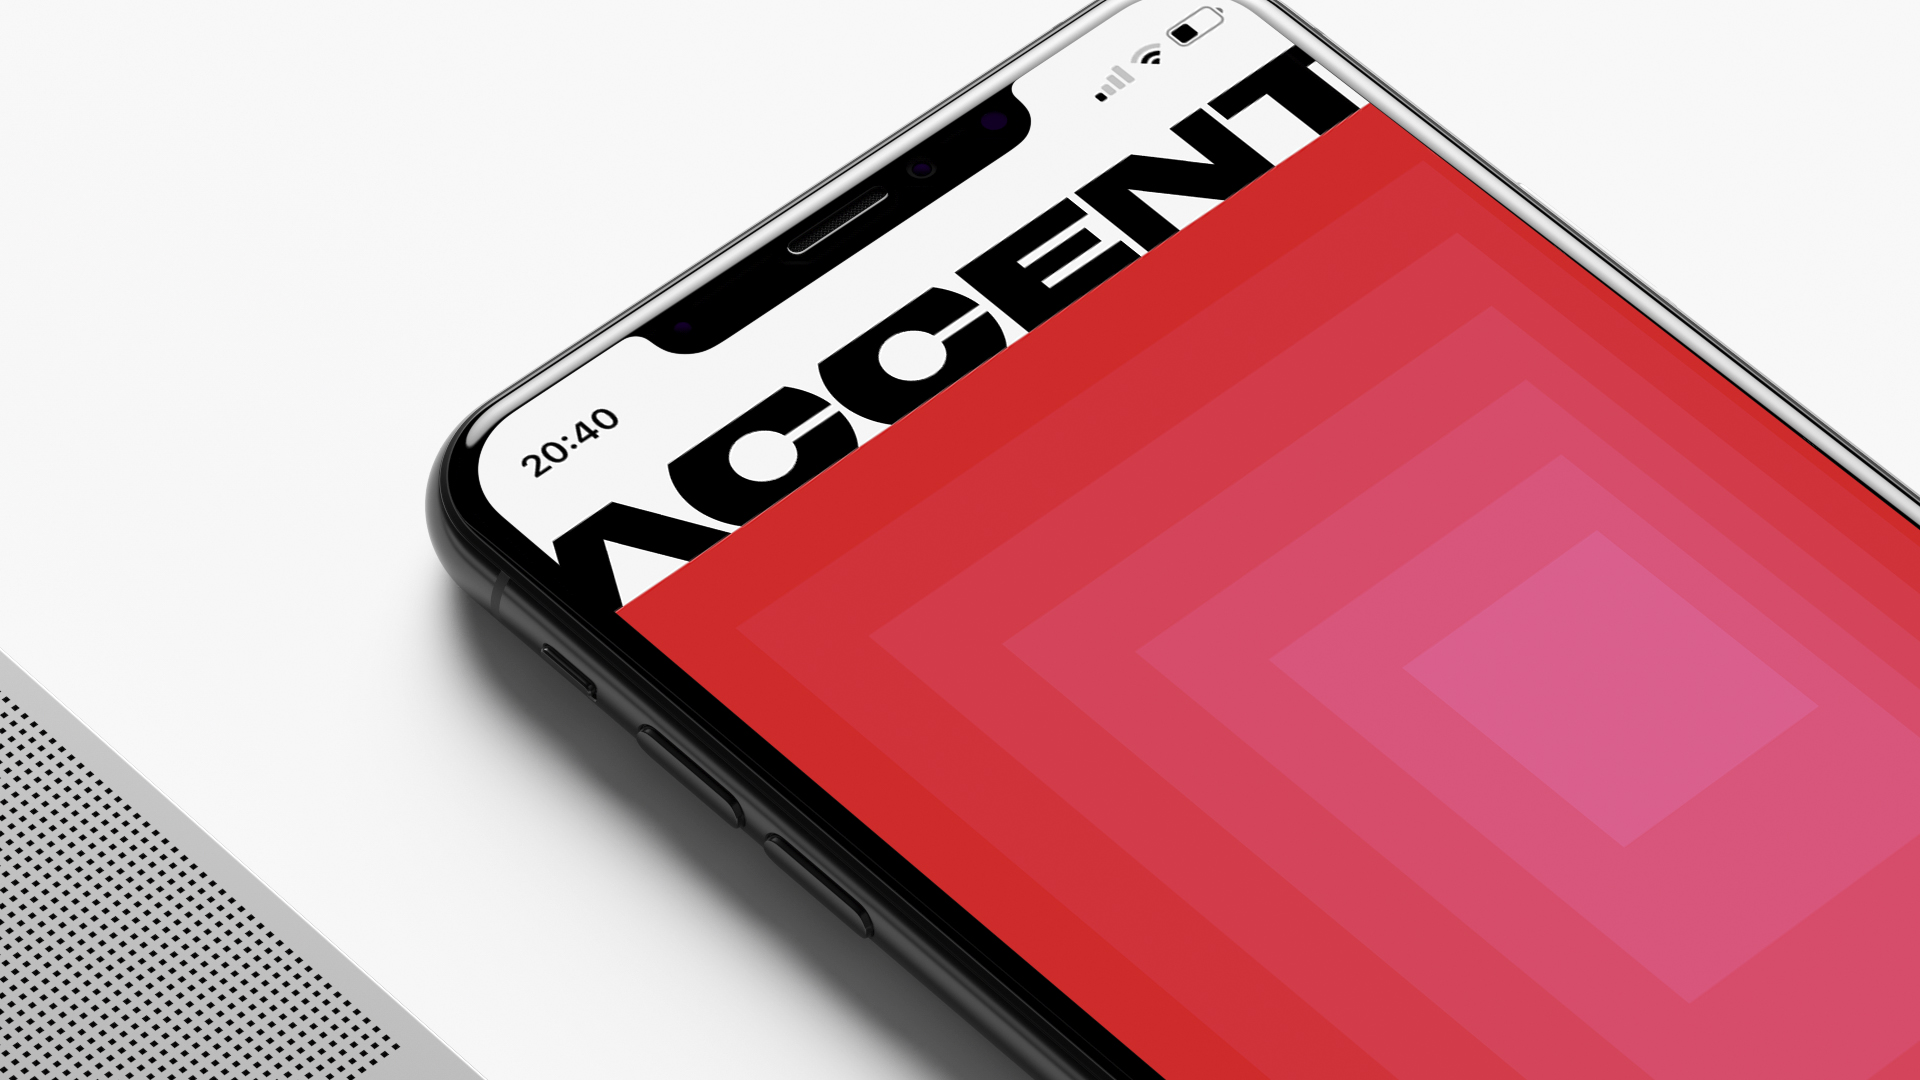 New Brand Identity for The Accent by Jean Wojciechowski